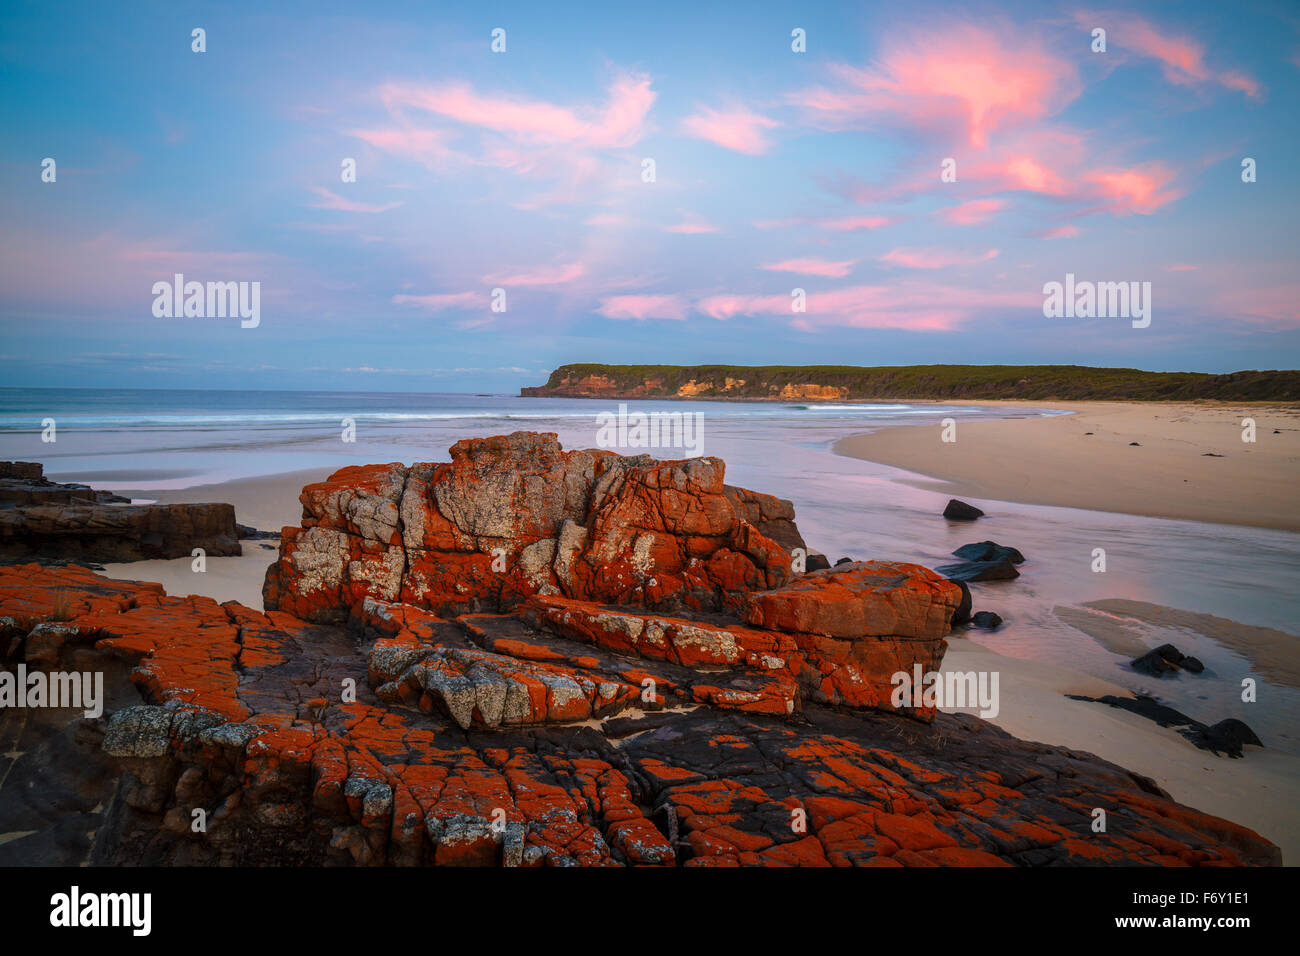 Sunset on the wild Nadgee Coast, NSW Stock Photo